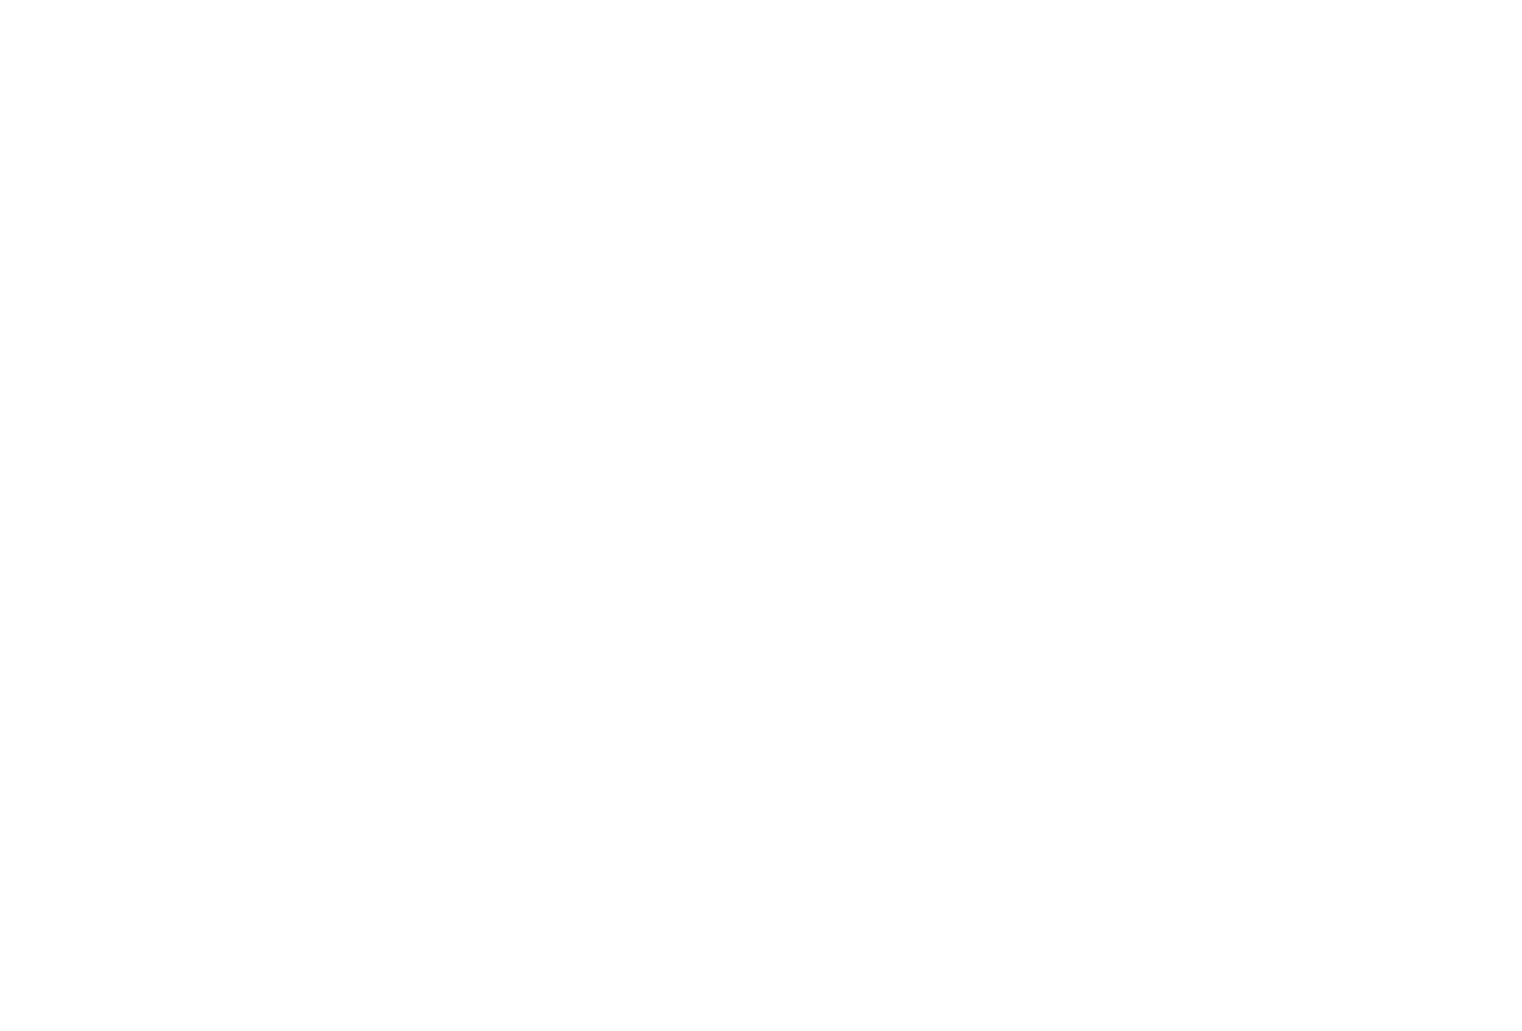 Vtech logo pour fonds sombres (PNG transparent)